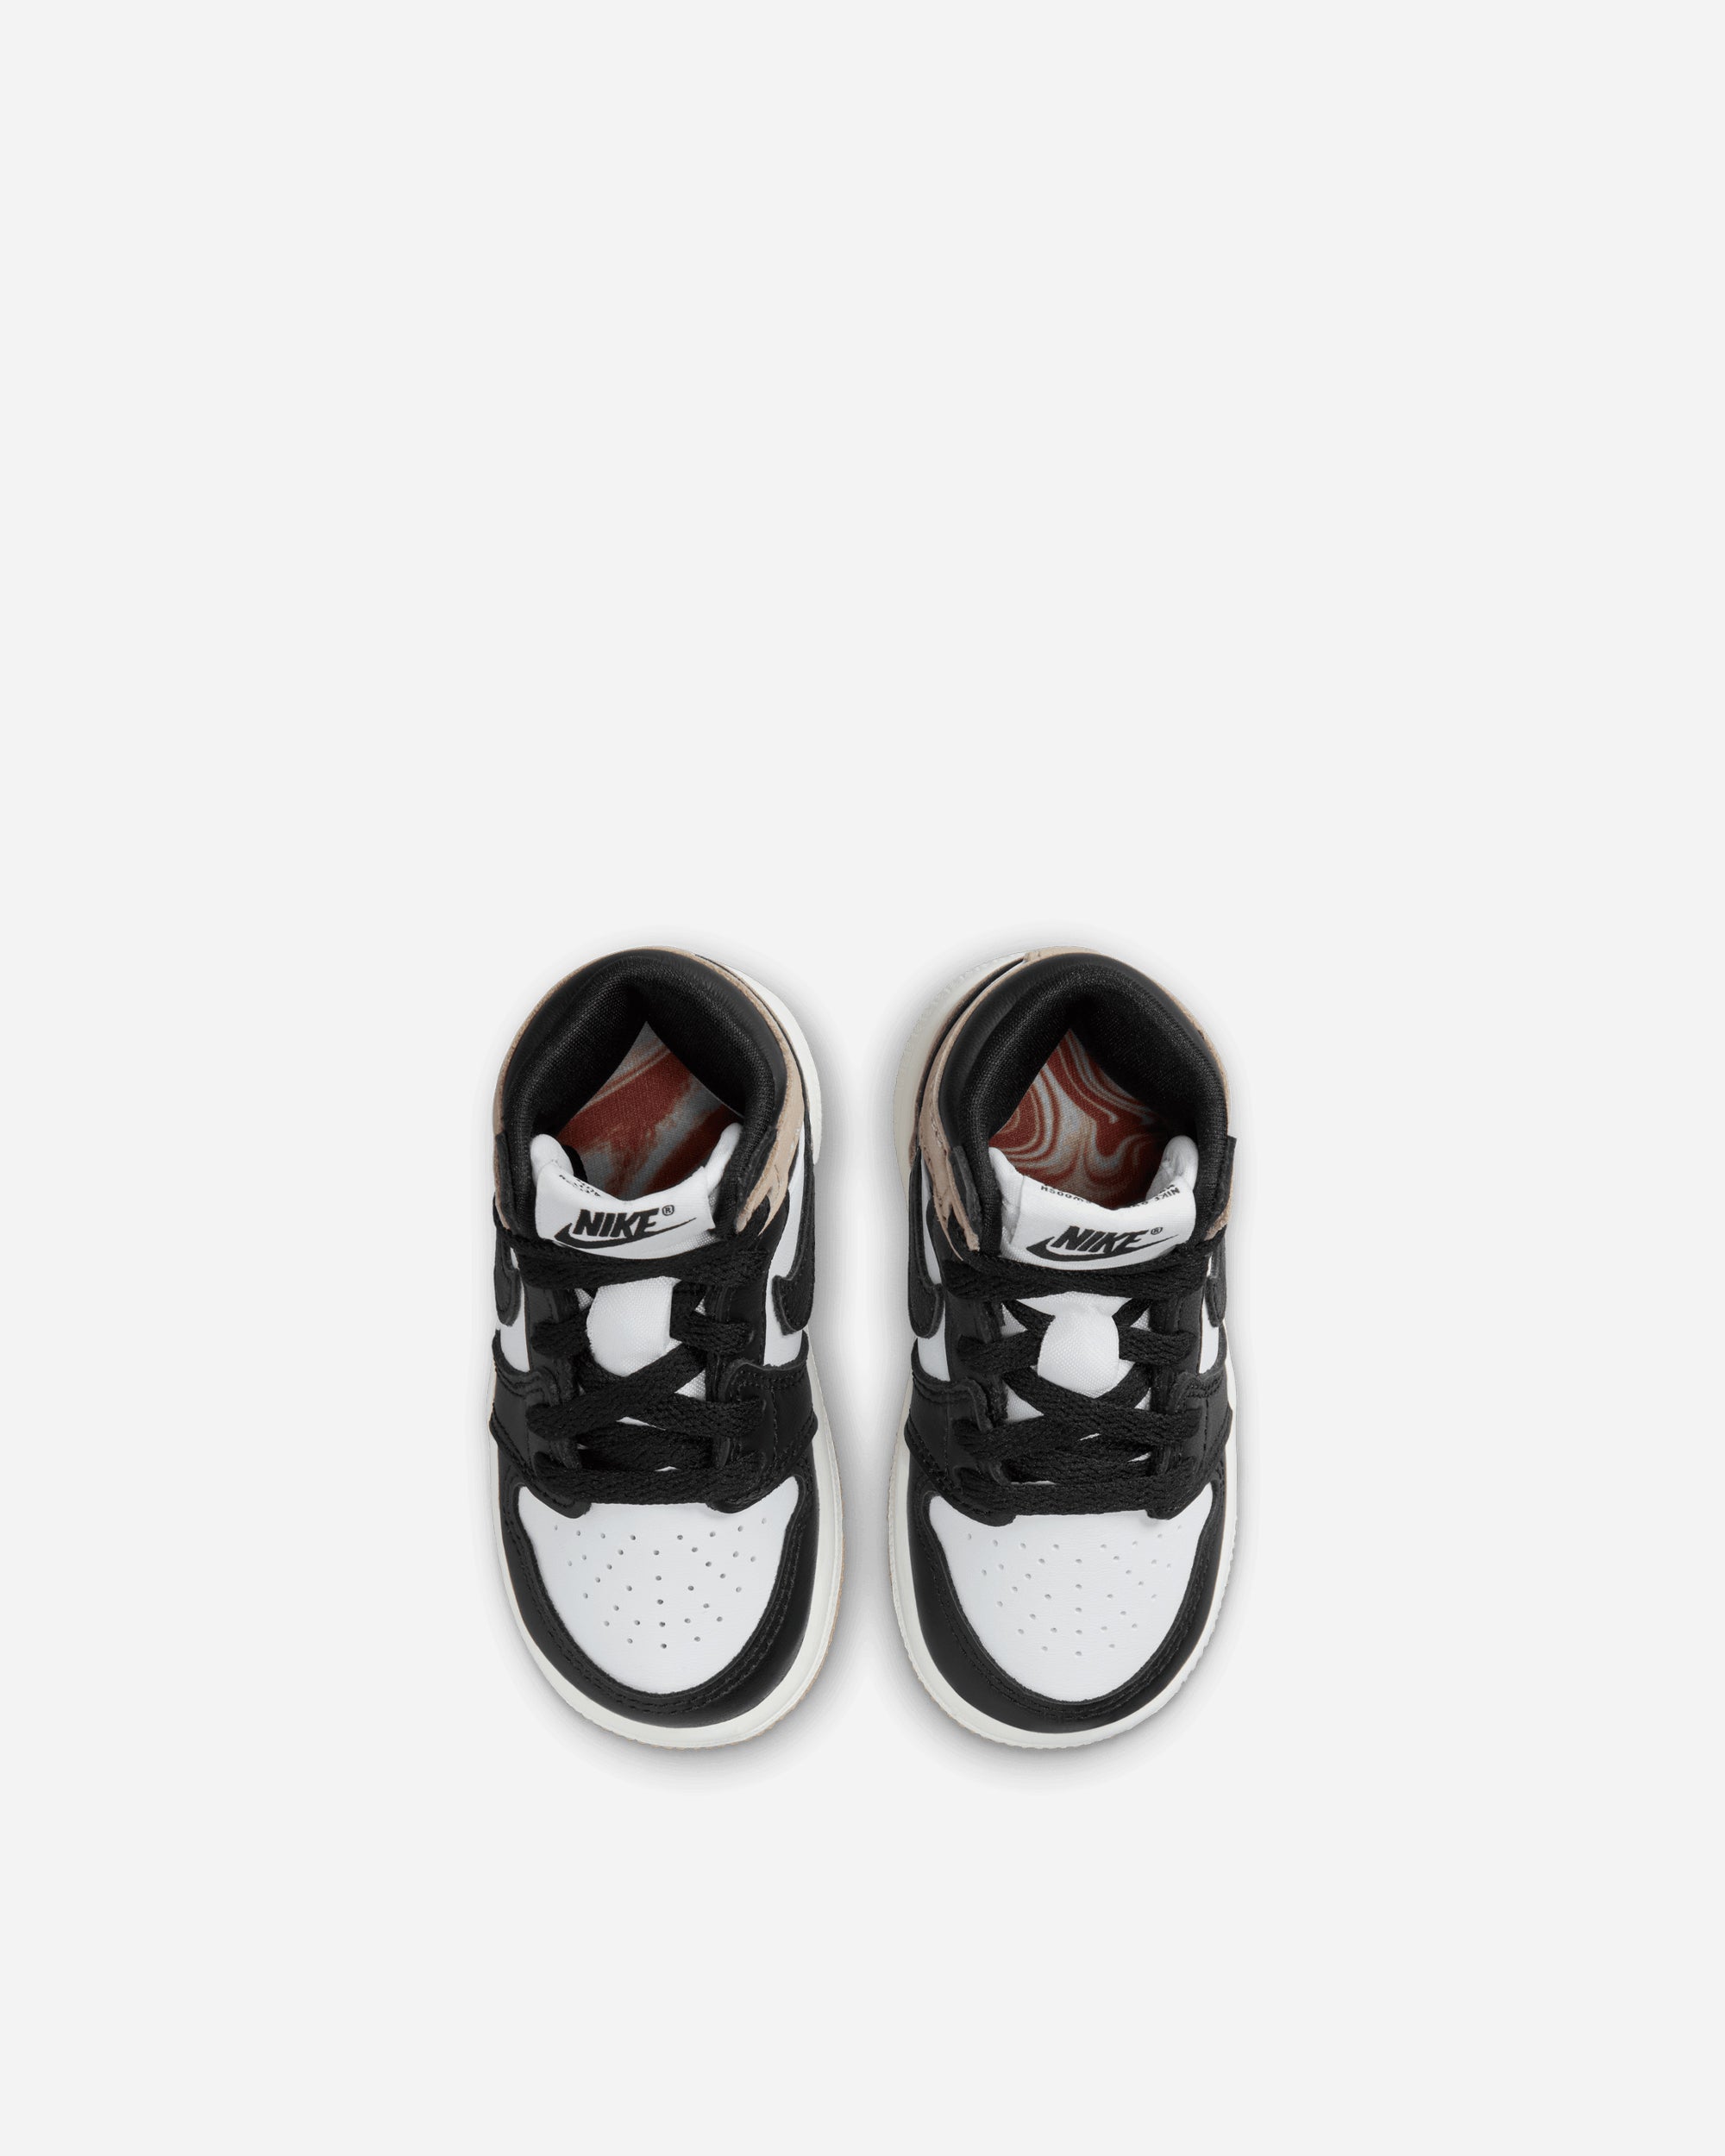 Jordan Brand Jordan 1 Retro High 'Latte' (Toddler) BLACK/BROWN FD2598-021